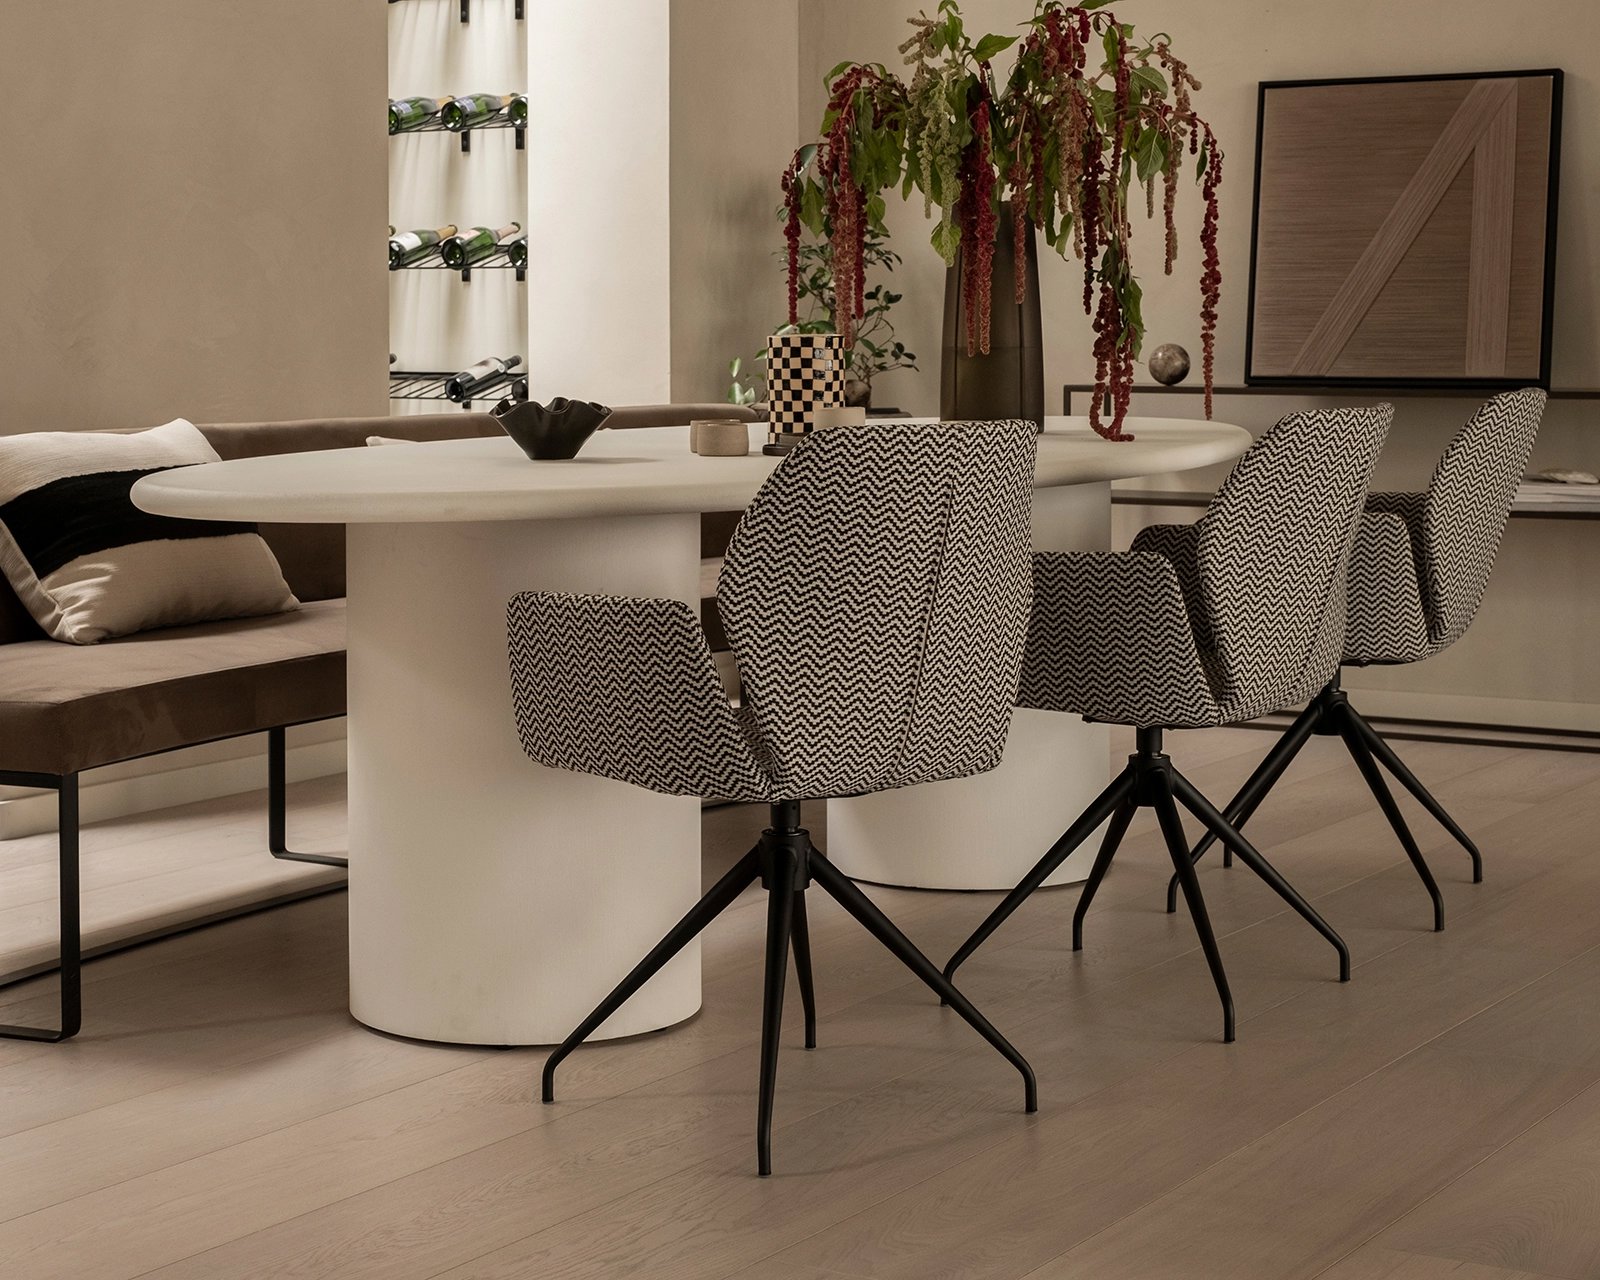 Ovale-betonnen-tafel-obbo-nesu-eetkamerbank-mood-stoelen4